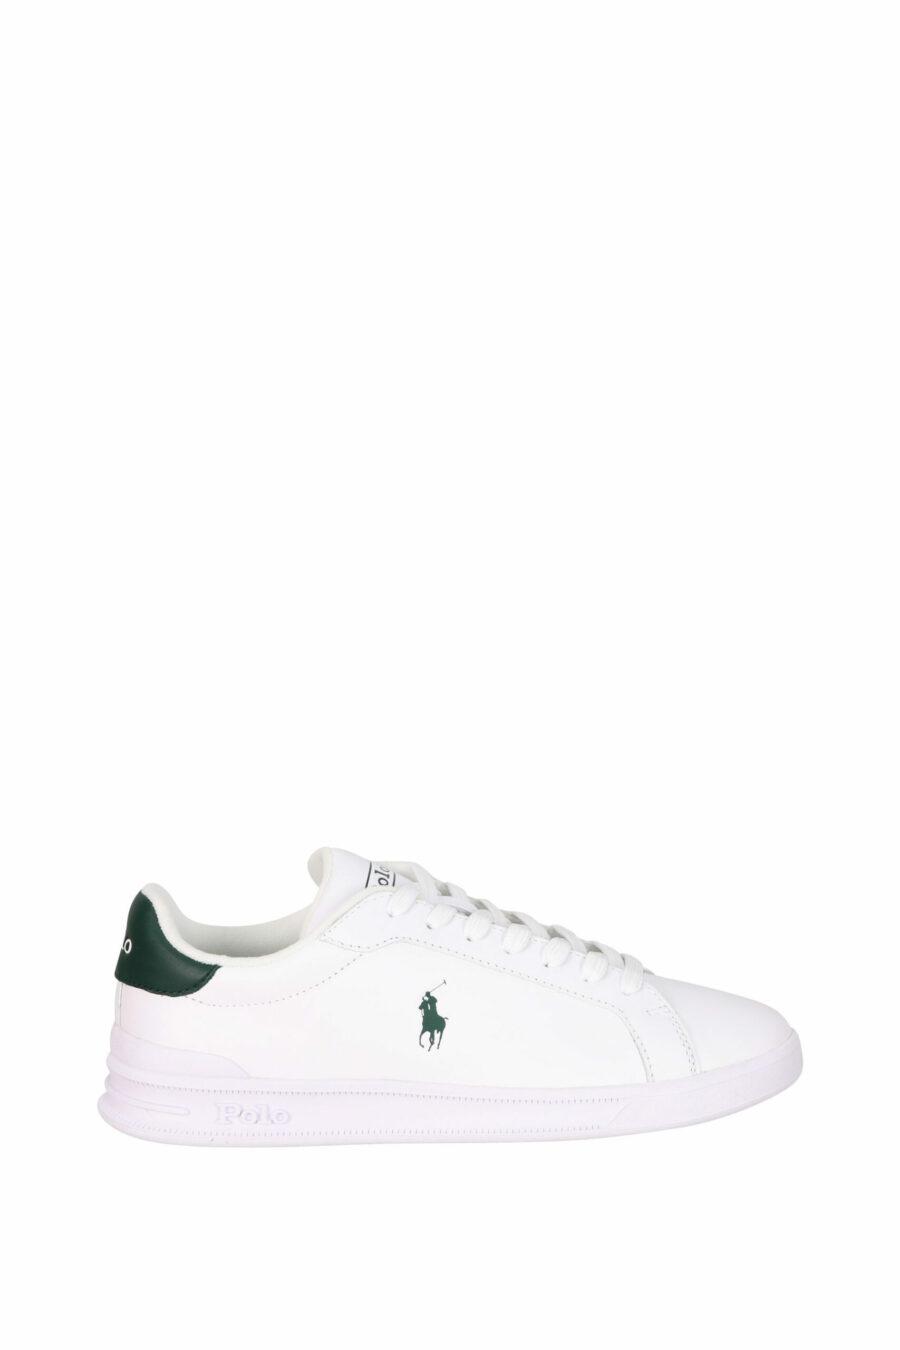 Baskets blanches avec détails verts et mini-logo "polo" vert - 3616419508906